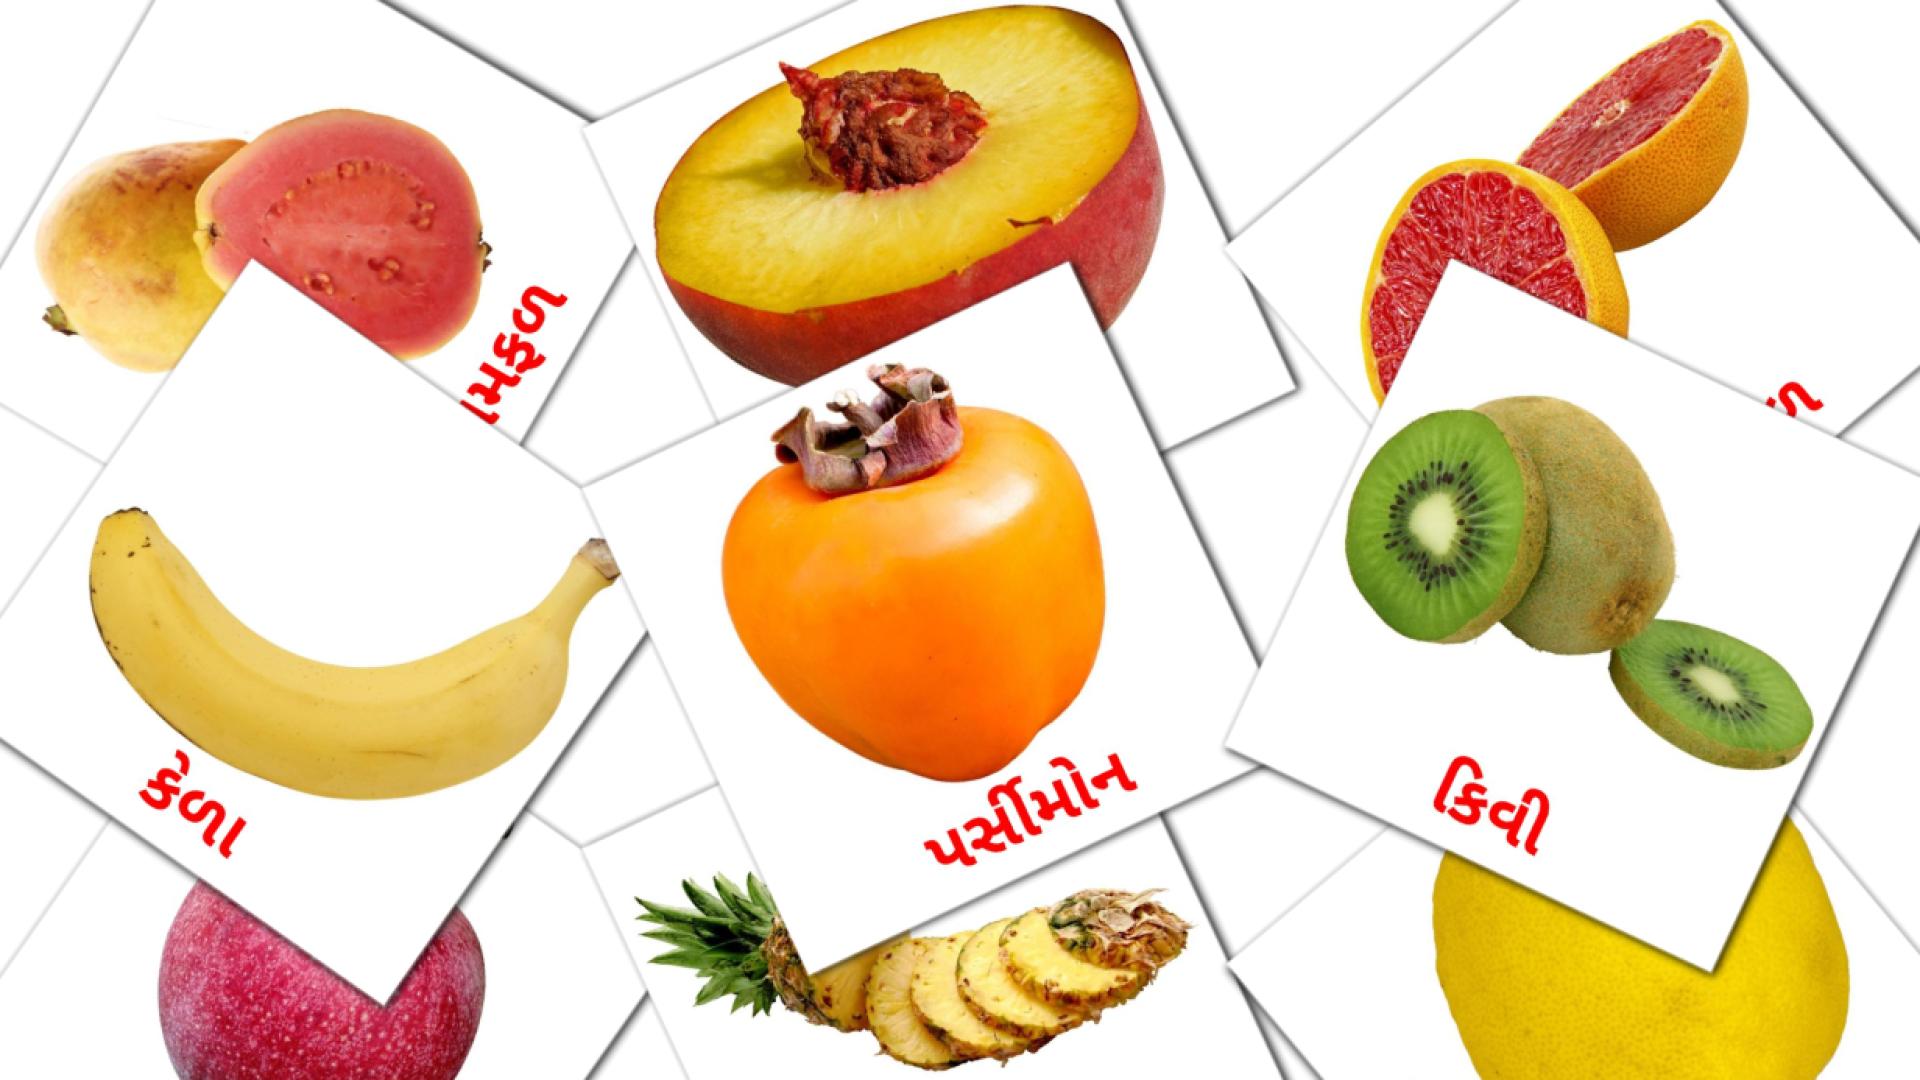 Bildkarten für ફળ